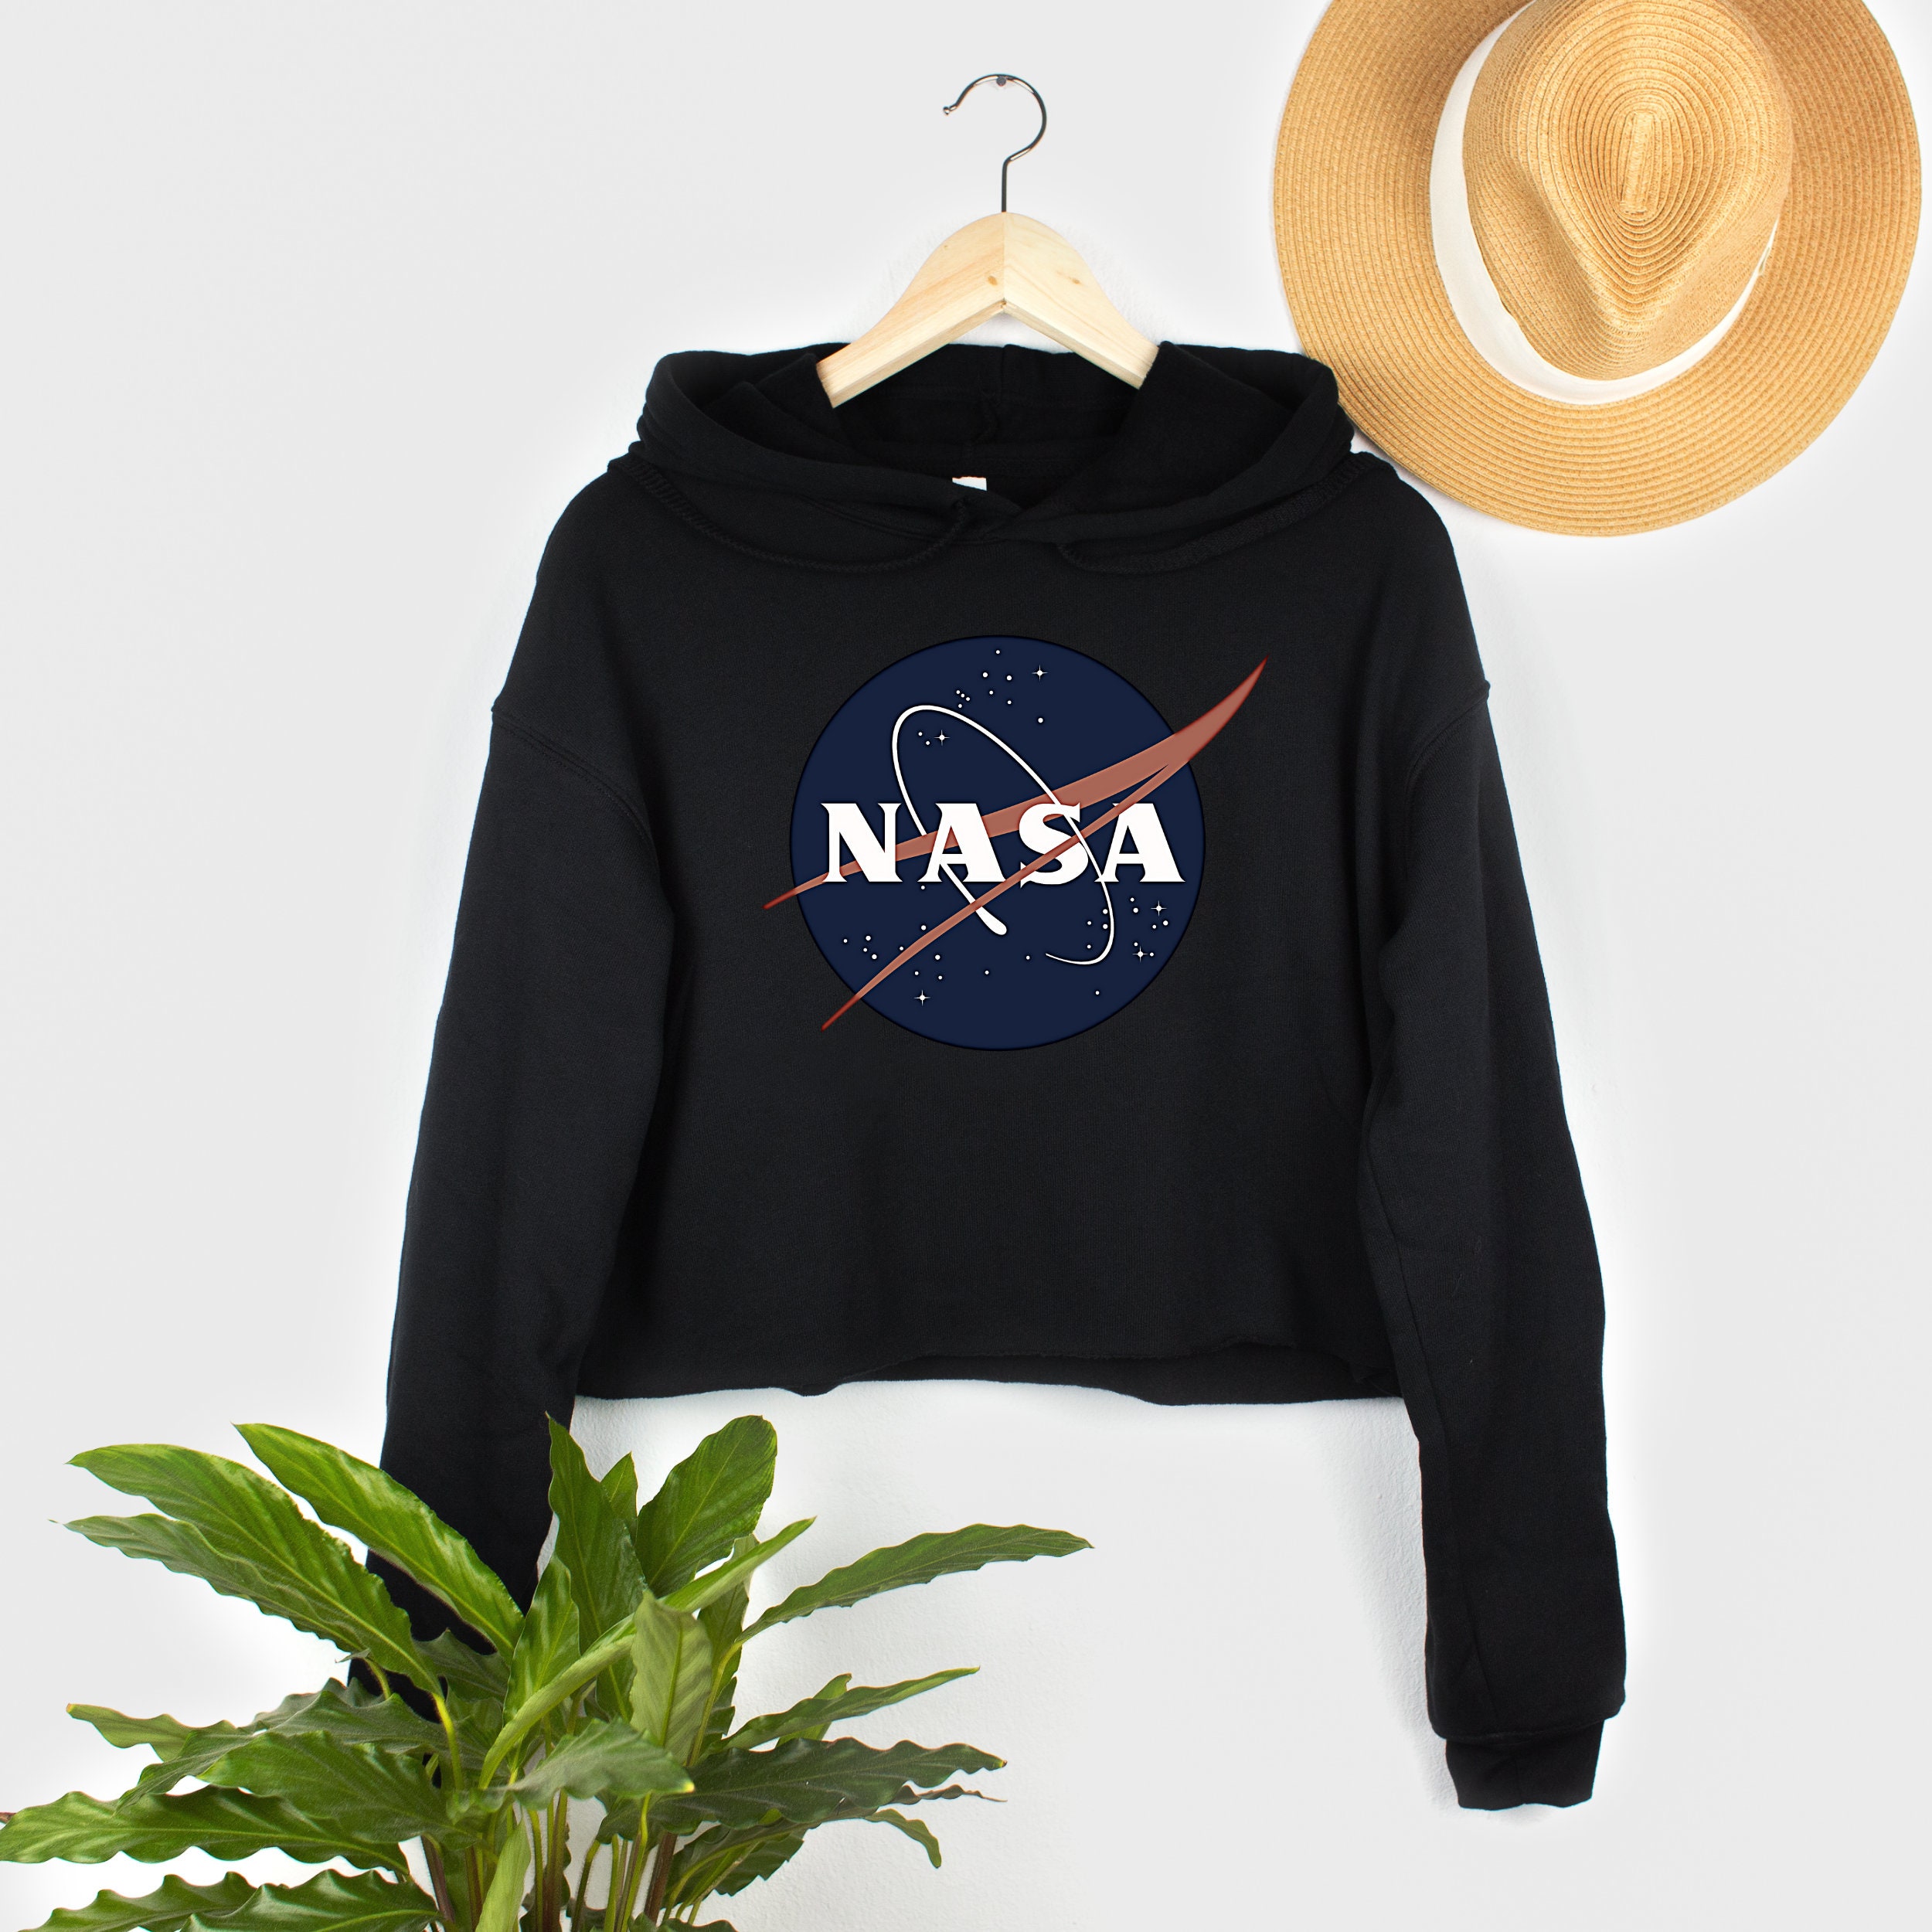 Crop Sweatshirt Crop Hoodie NASA NASA Shirt Sweatshirt - Etsy New Zealand